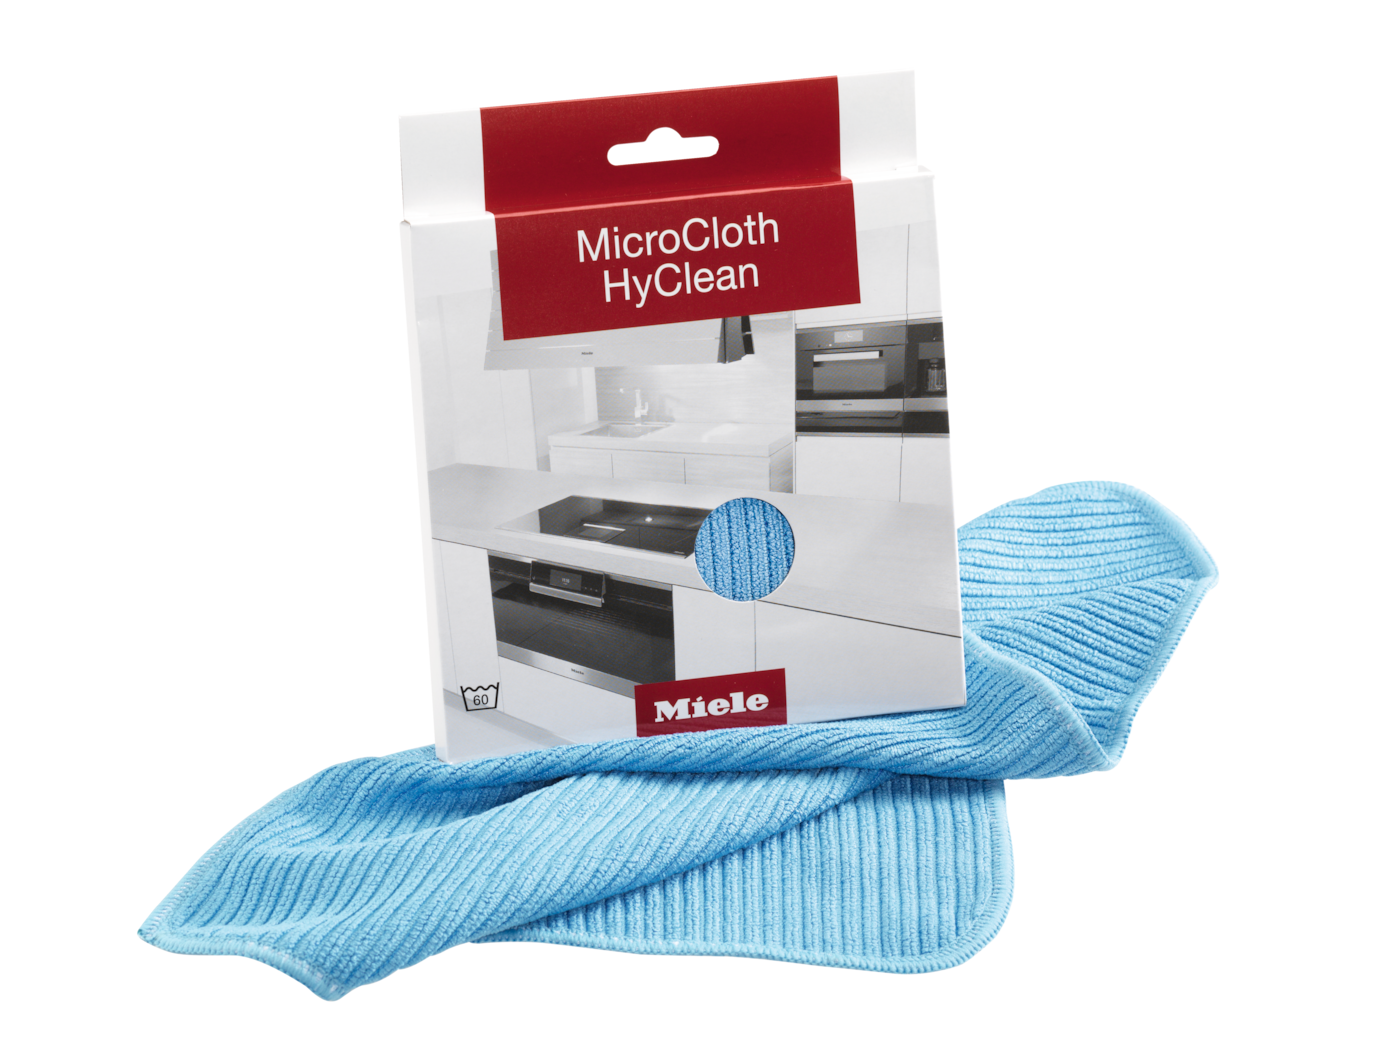 MicroCloth HyClean, 1 darab –  antibakteriális univerzális kendő a higiénia javítása érdekében.